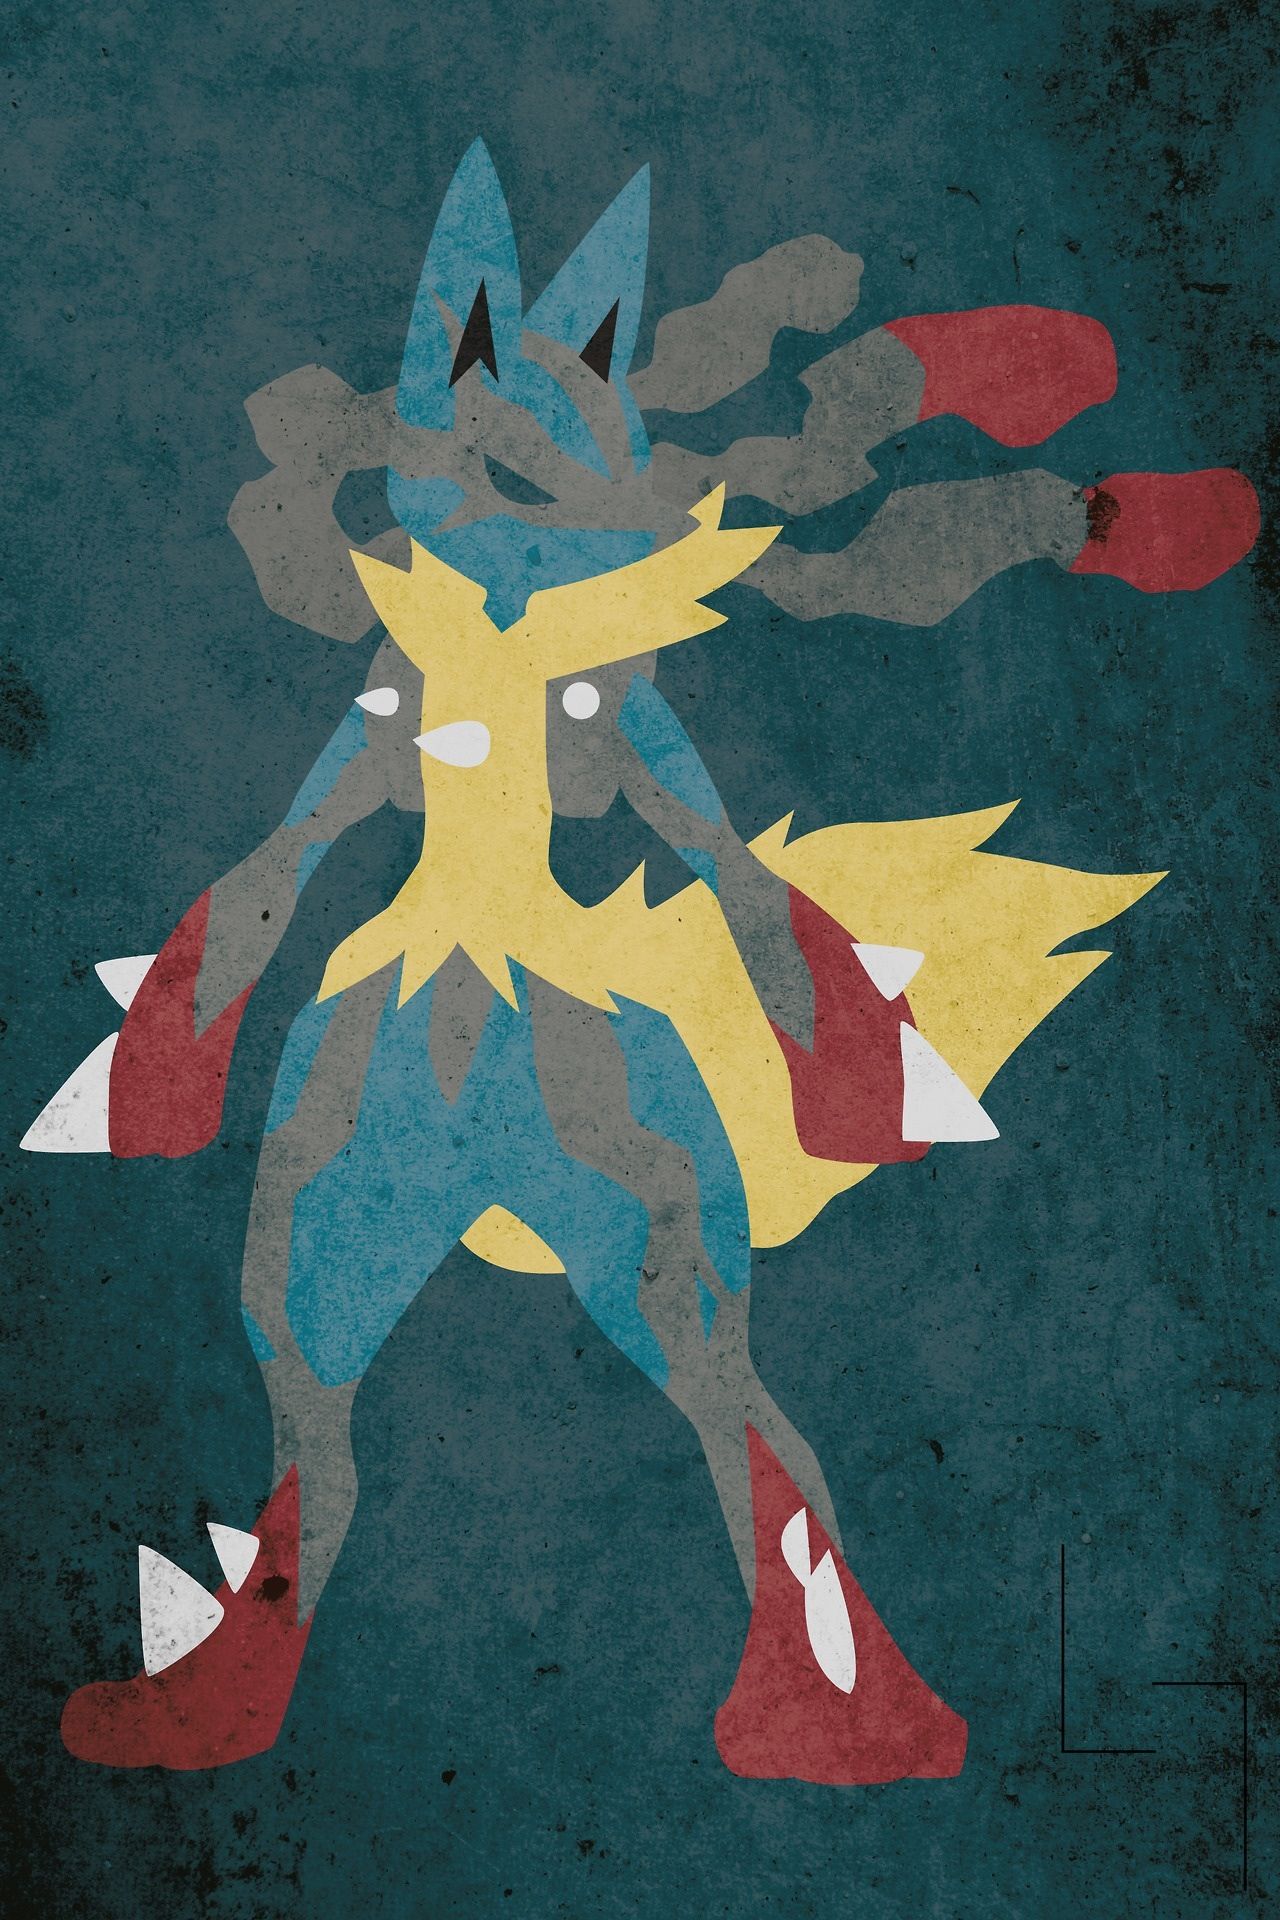 Lucario Wallpaper pokemon  Pokemon, Imagem de fundo para iphone